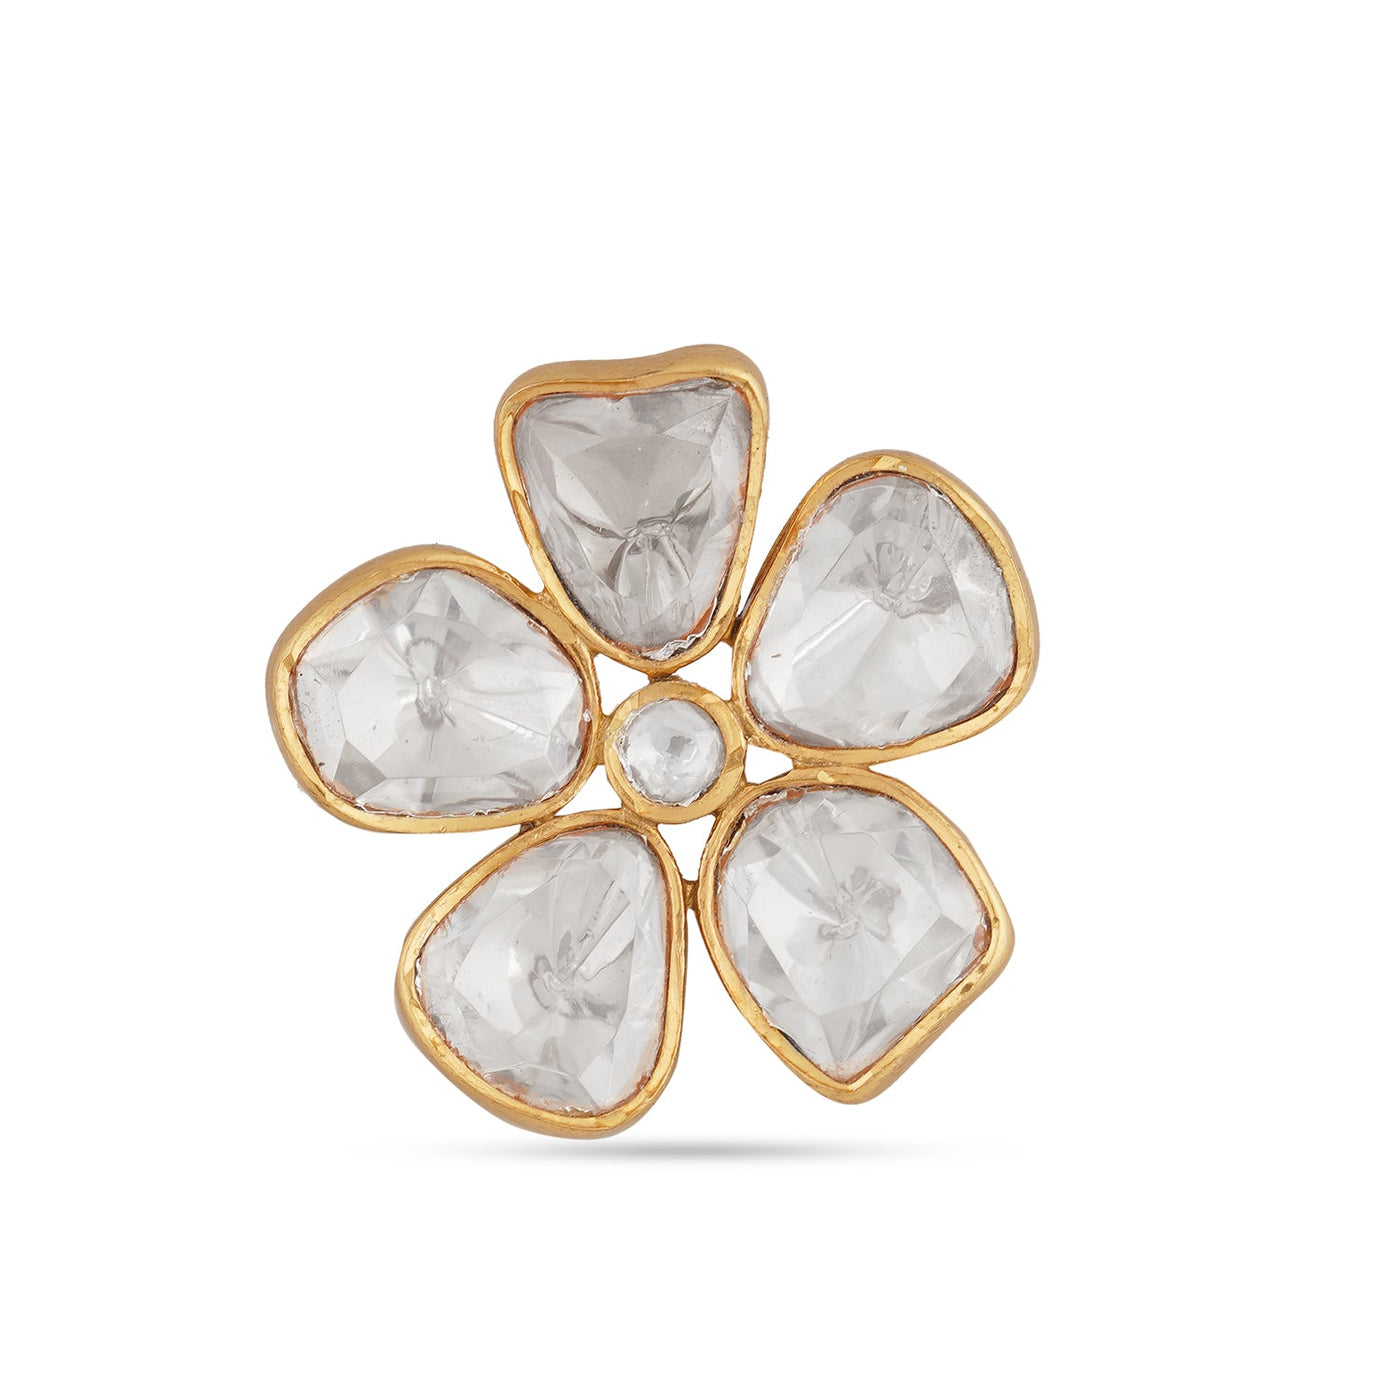 White Flower Shaped Kundan Ring